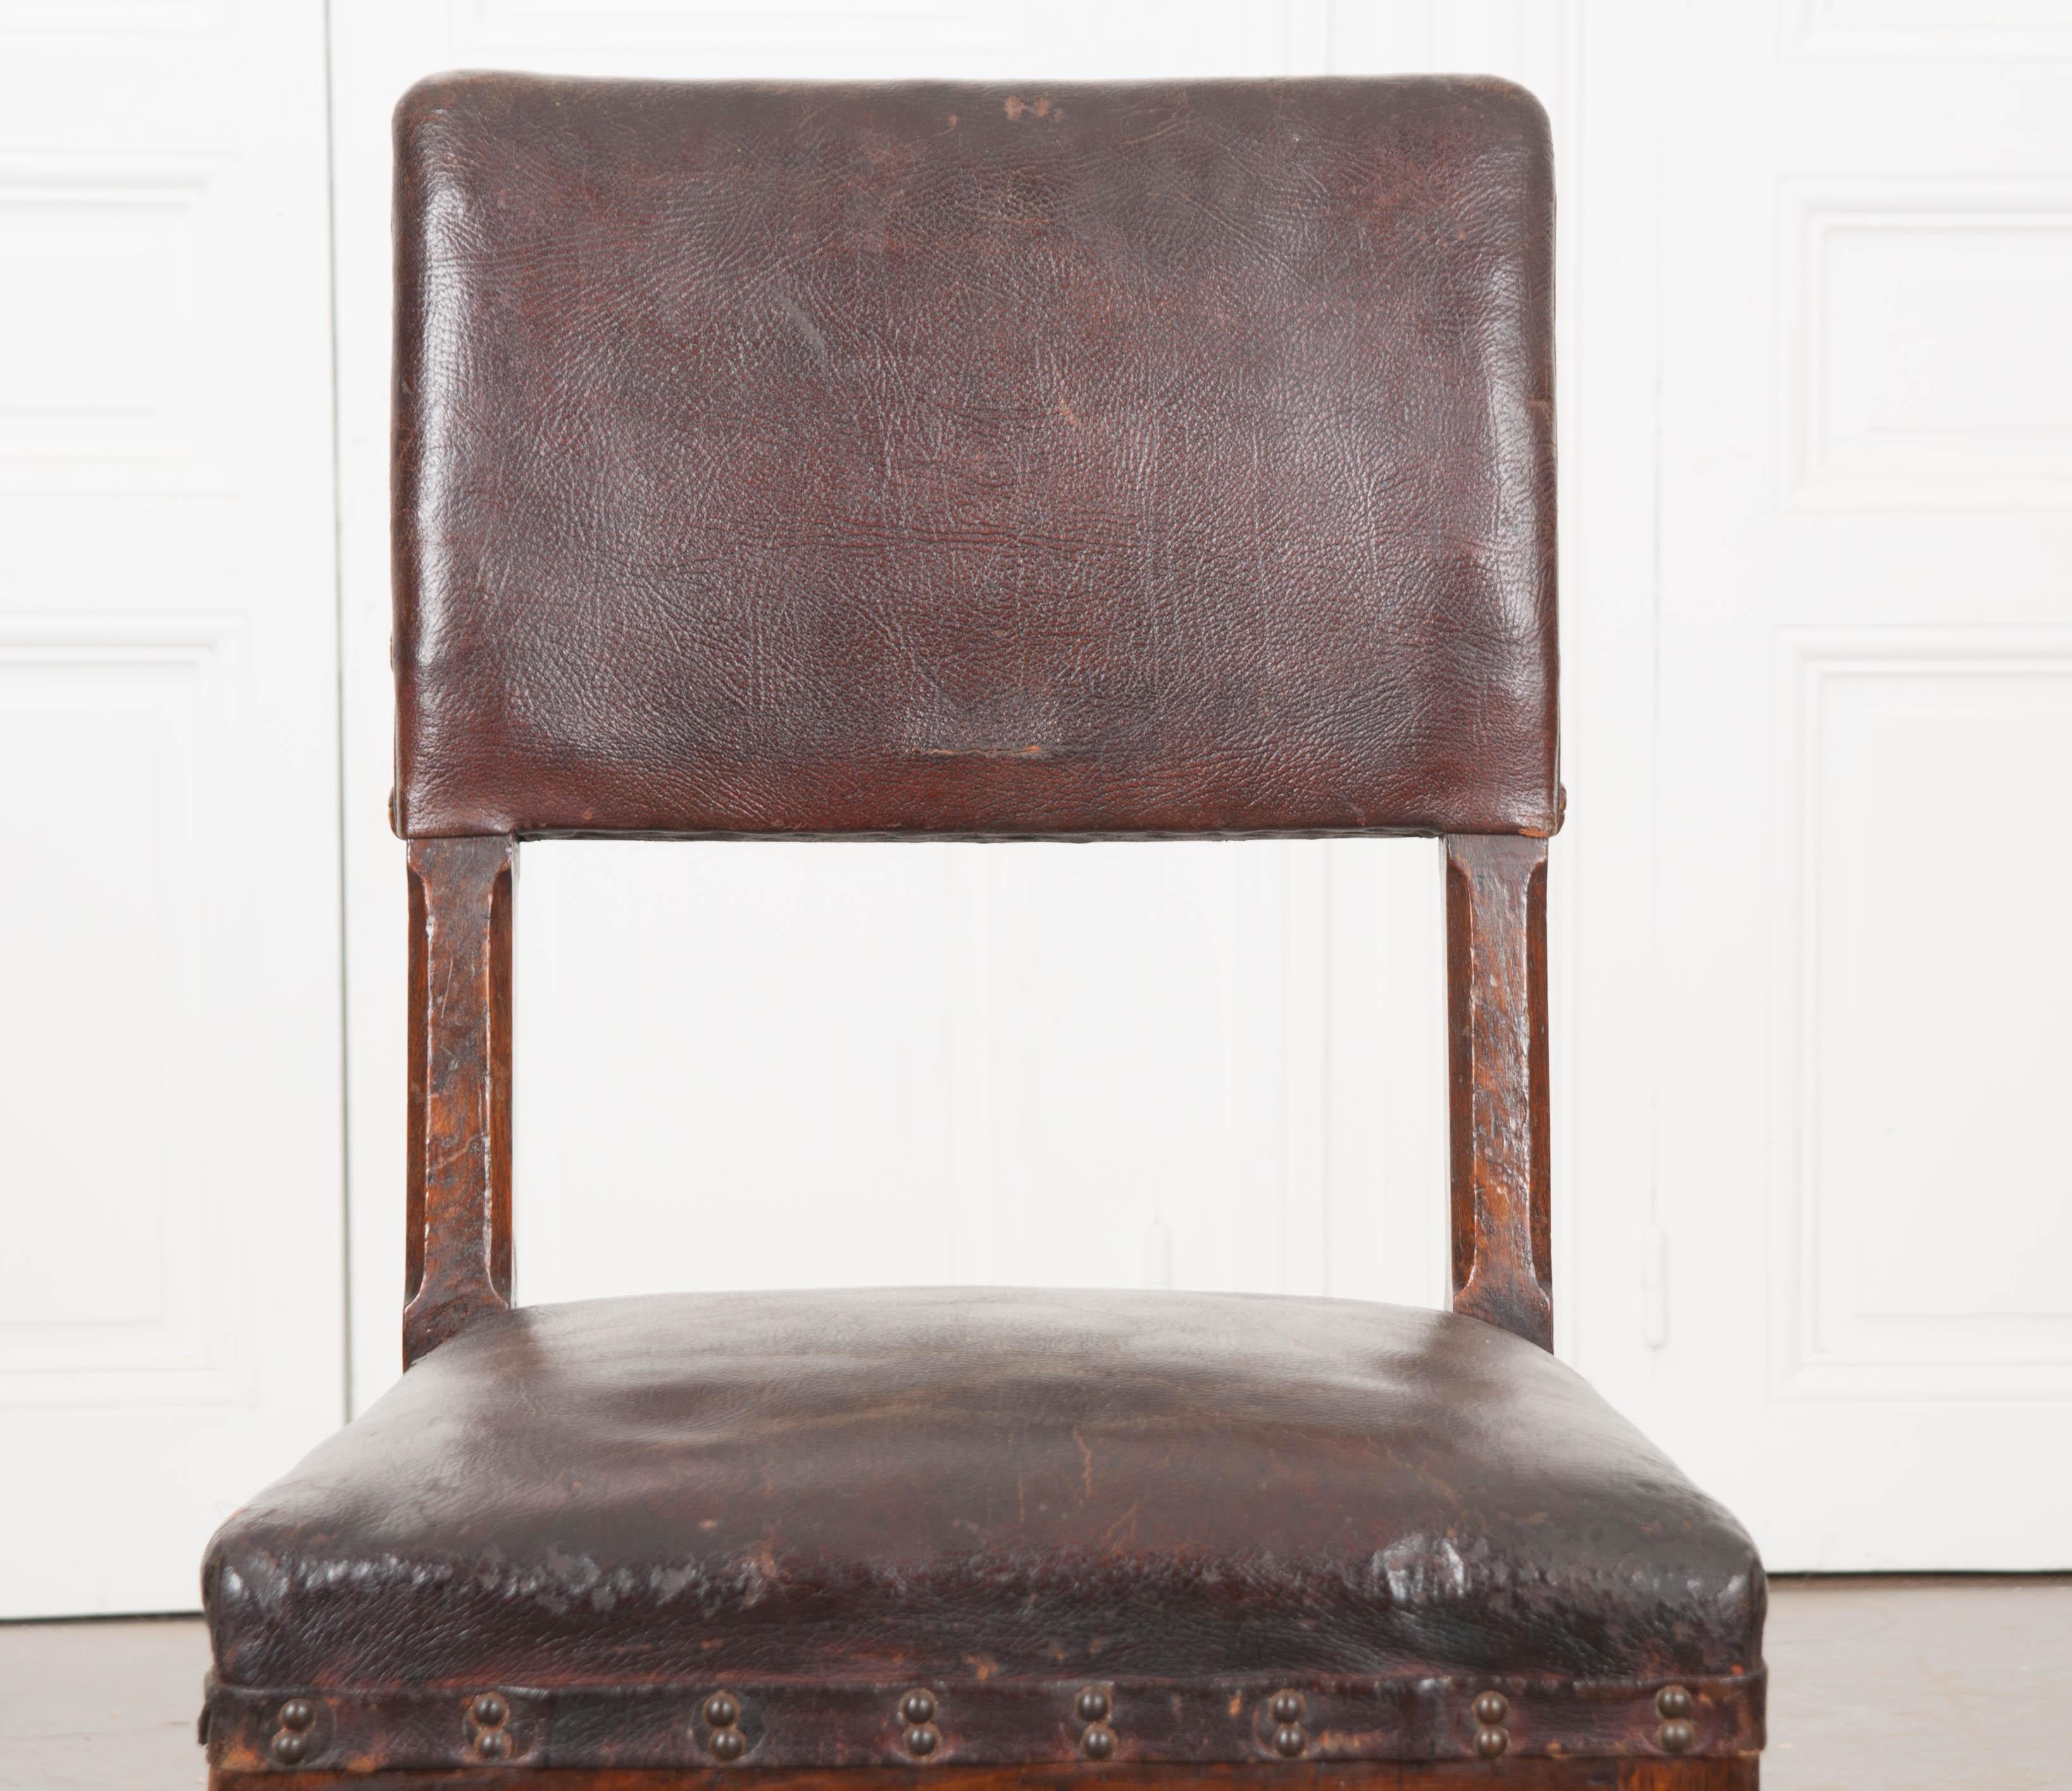 Dieser hübsche englische Eichen-Schreibtischstuhl aus dem 19. Jahrhundert, ca. 1860, ist mit der originalen Lederpolsterung versehen und weist eine unglaublich reiche Patina auf. Die gepolsterte Stuhllehne mit großen dekorativen Nagelköpfen (mehrere